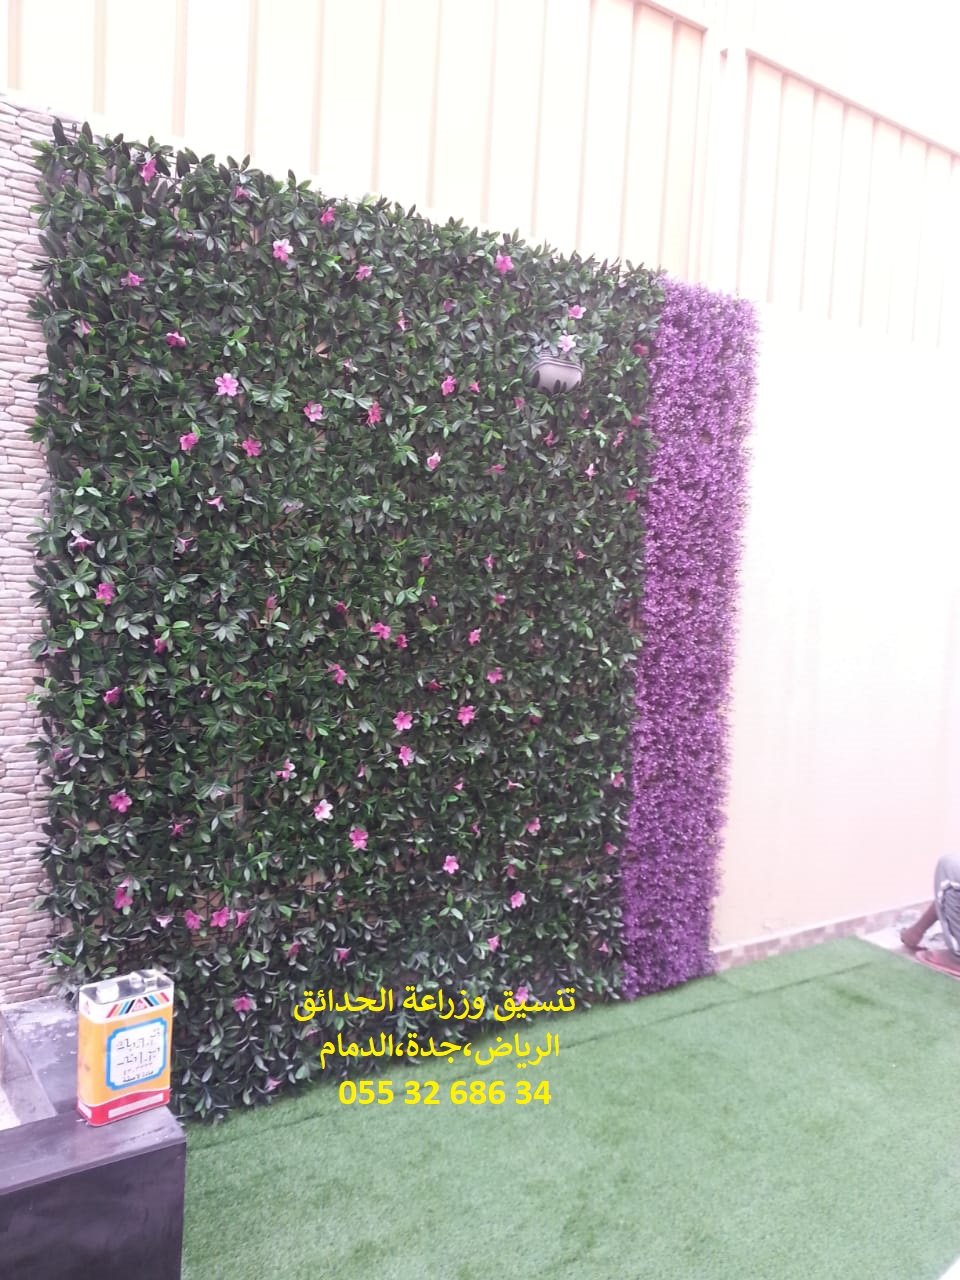 شركة تنسيق حدائق عشب صناعي عشب جداري الرياض جدة الدمام 0553268634 P_1143f11y28